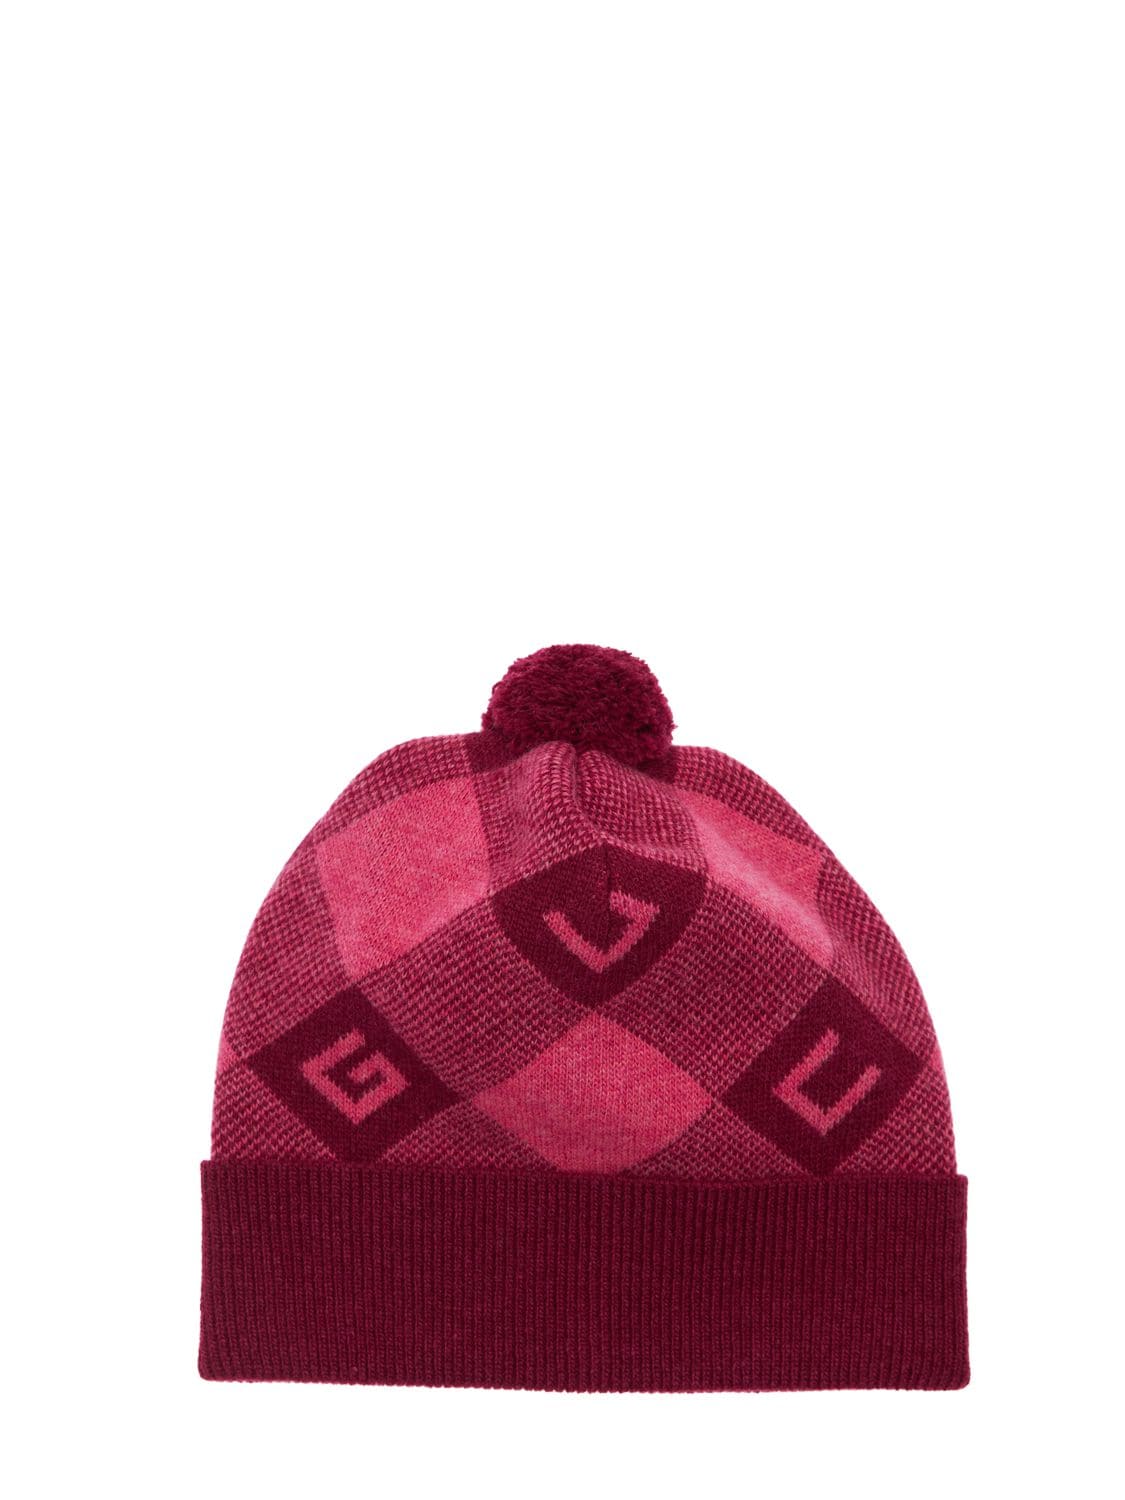 Gucci Babies' Gg Logo Wool Hat W/ Pompom In 와인색